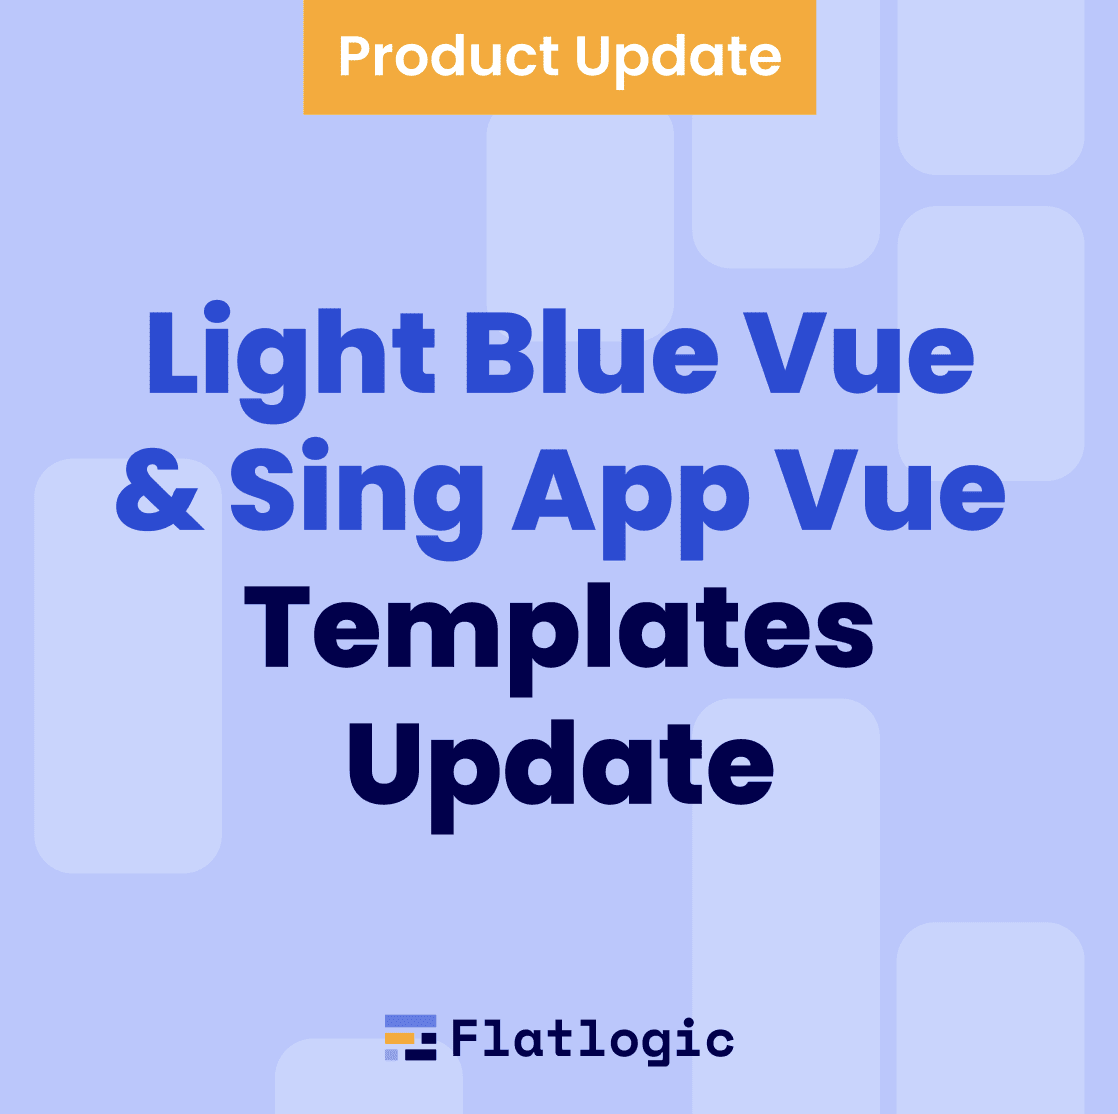 Light Blue Vue & Sing App Vue Templates Update